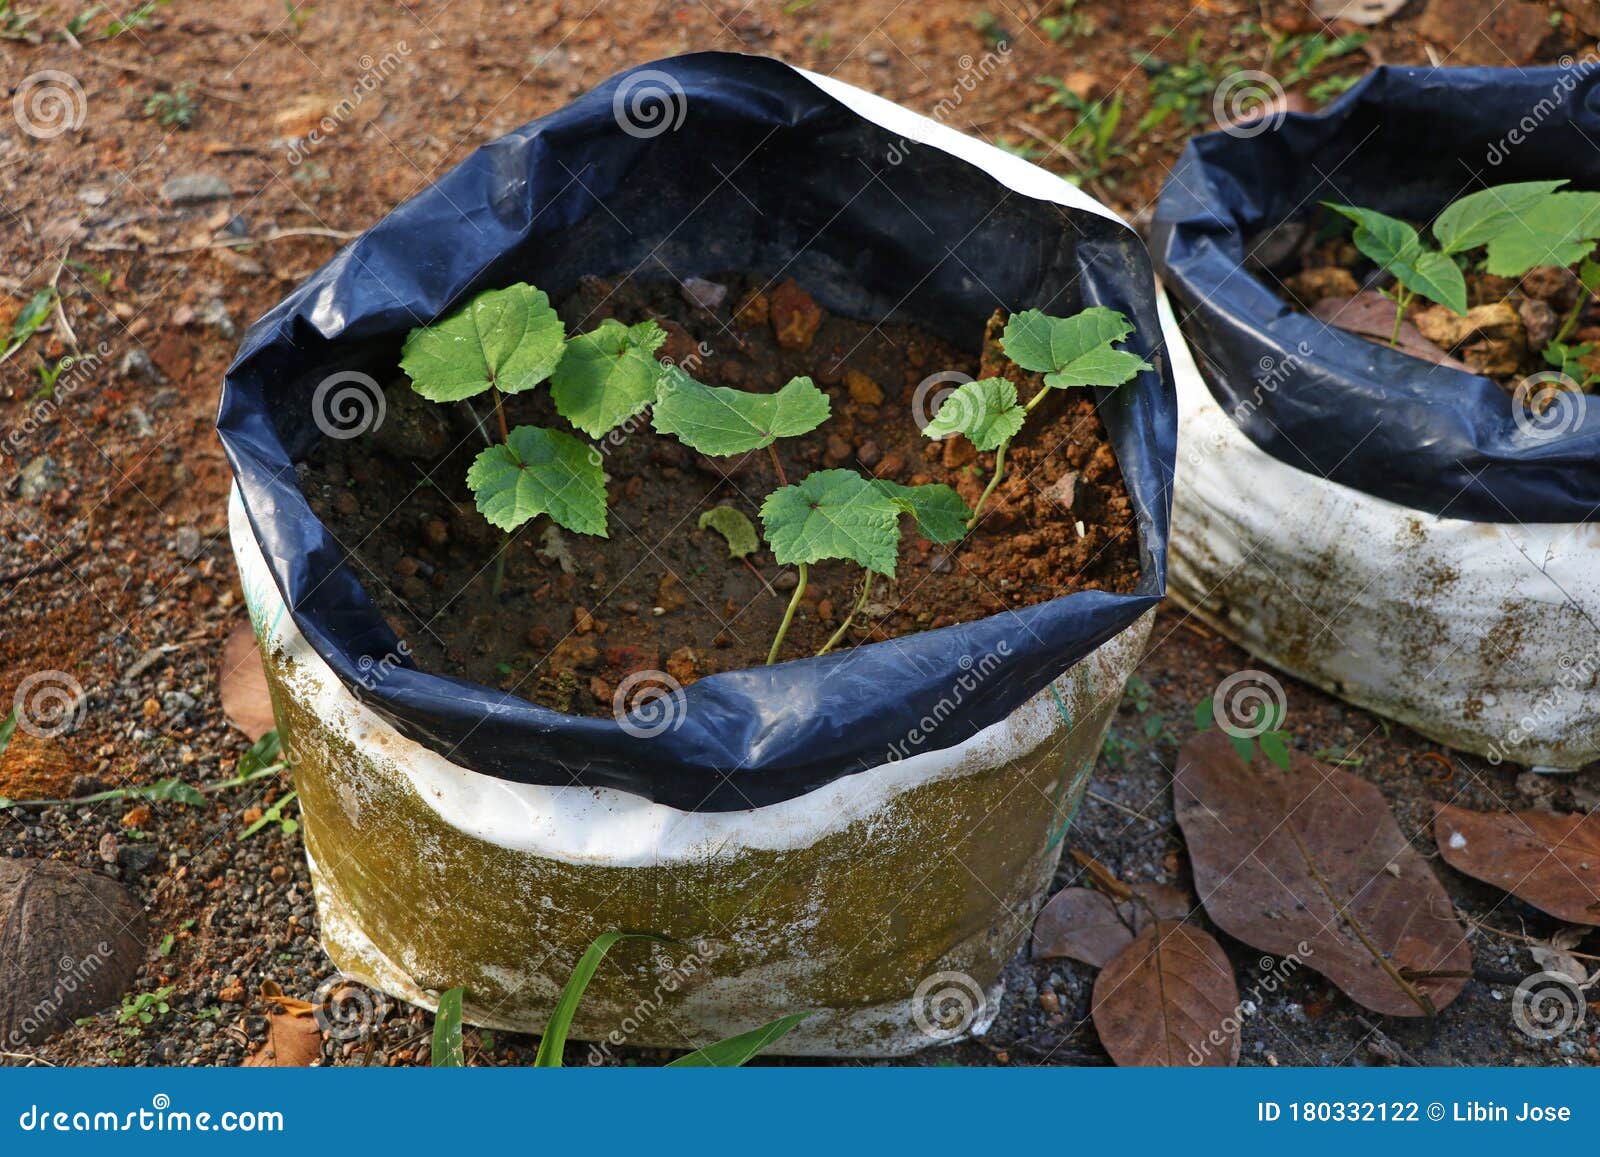 https://thumbs.dreamstime.com/z/plants-vegetables-growing-growbag-180332122.jpg